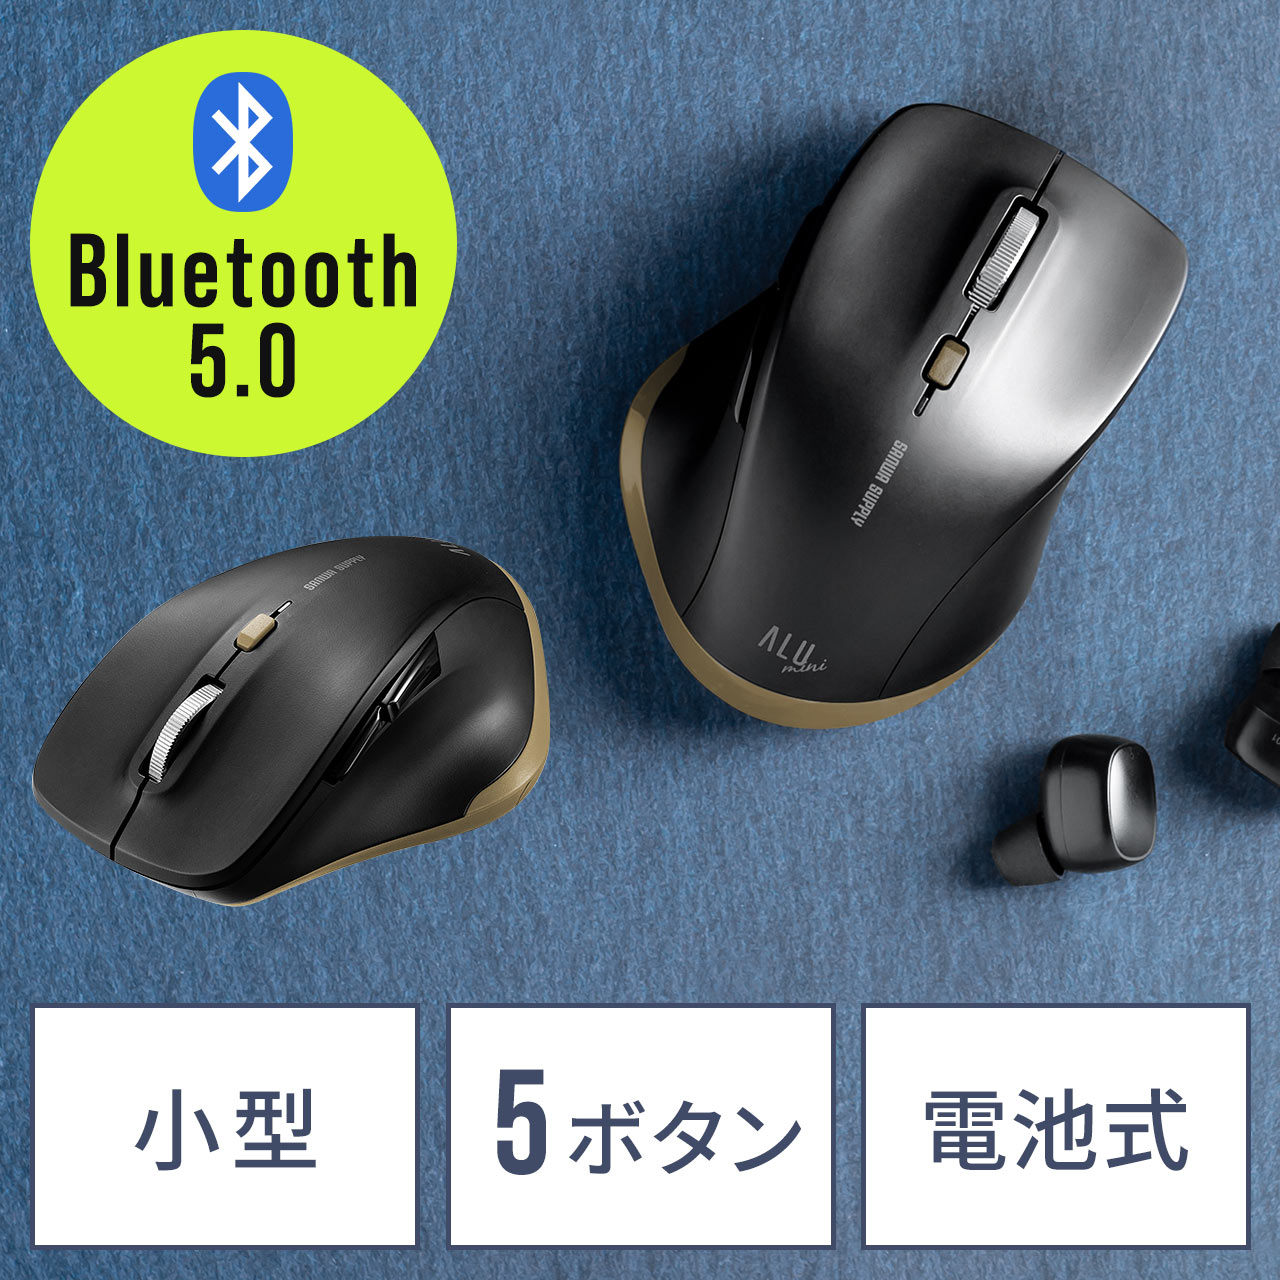 Bluetoothマウス 小型 5ボタン アルミ製スクロールホイール 静音ボタン ブルーledセンサー ブラック 400 Mabt159bkの販売商品 通販ならサンワダイレクト